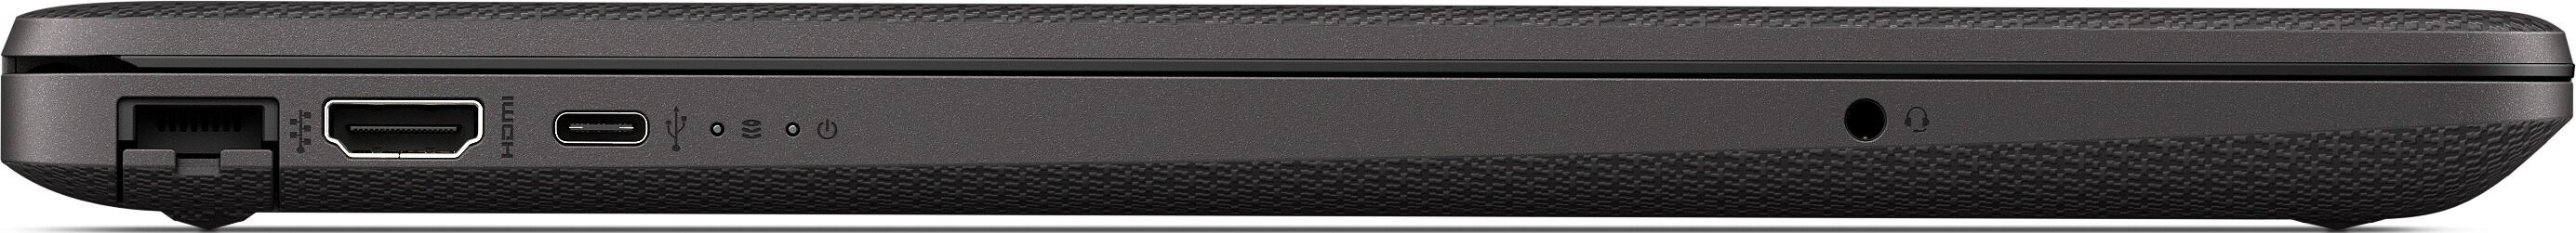 Ноутбук HP 255 G8 R3-3250U 2.3GHz,15.6" FHD (1920x1080) AG,8Gb DDR4(1),256Gb SSD,No ODD,41Wh,1.9kg,1y,Dark Ash Silver,Dos-39313